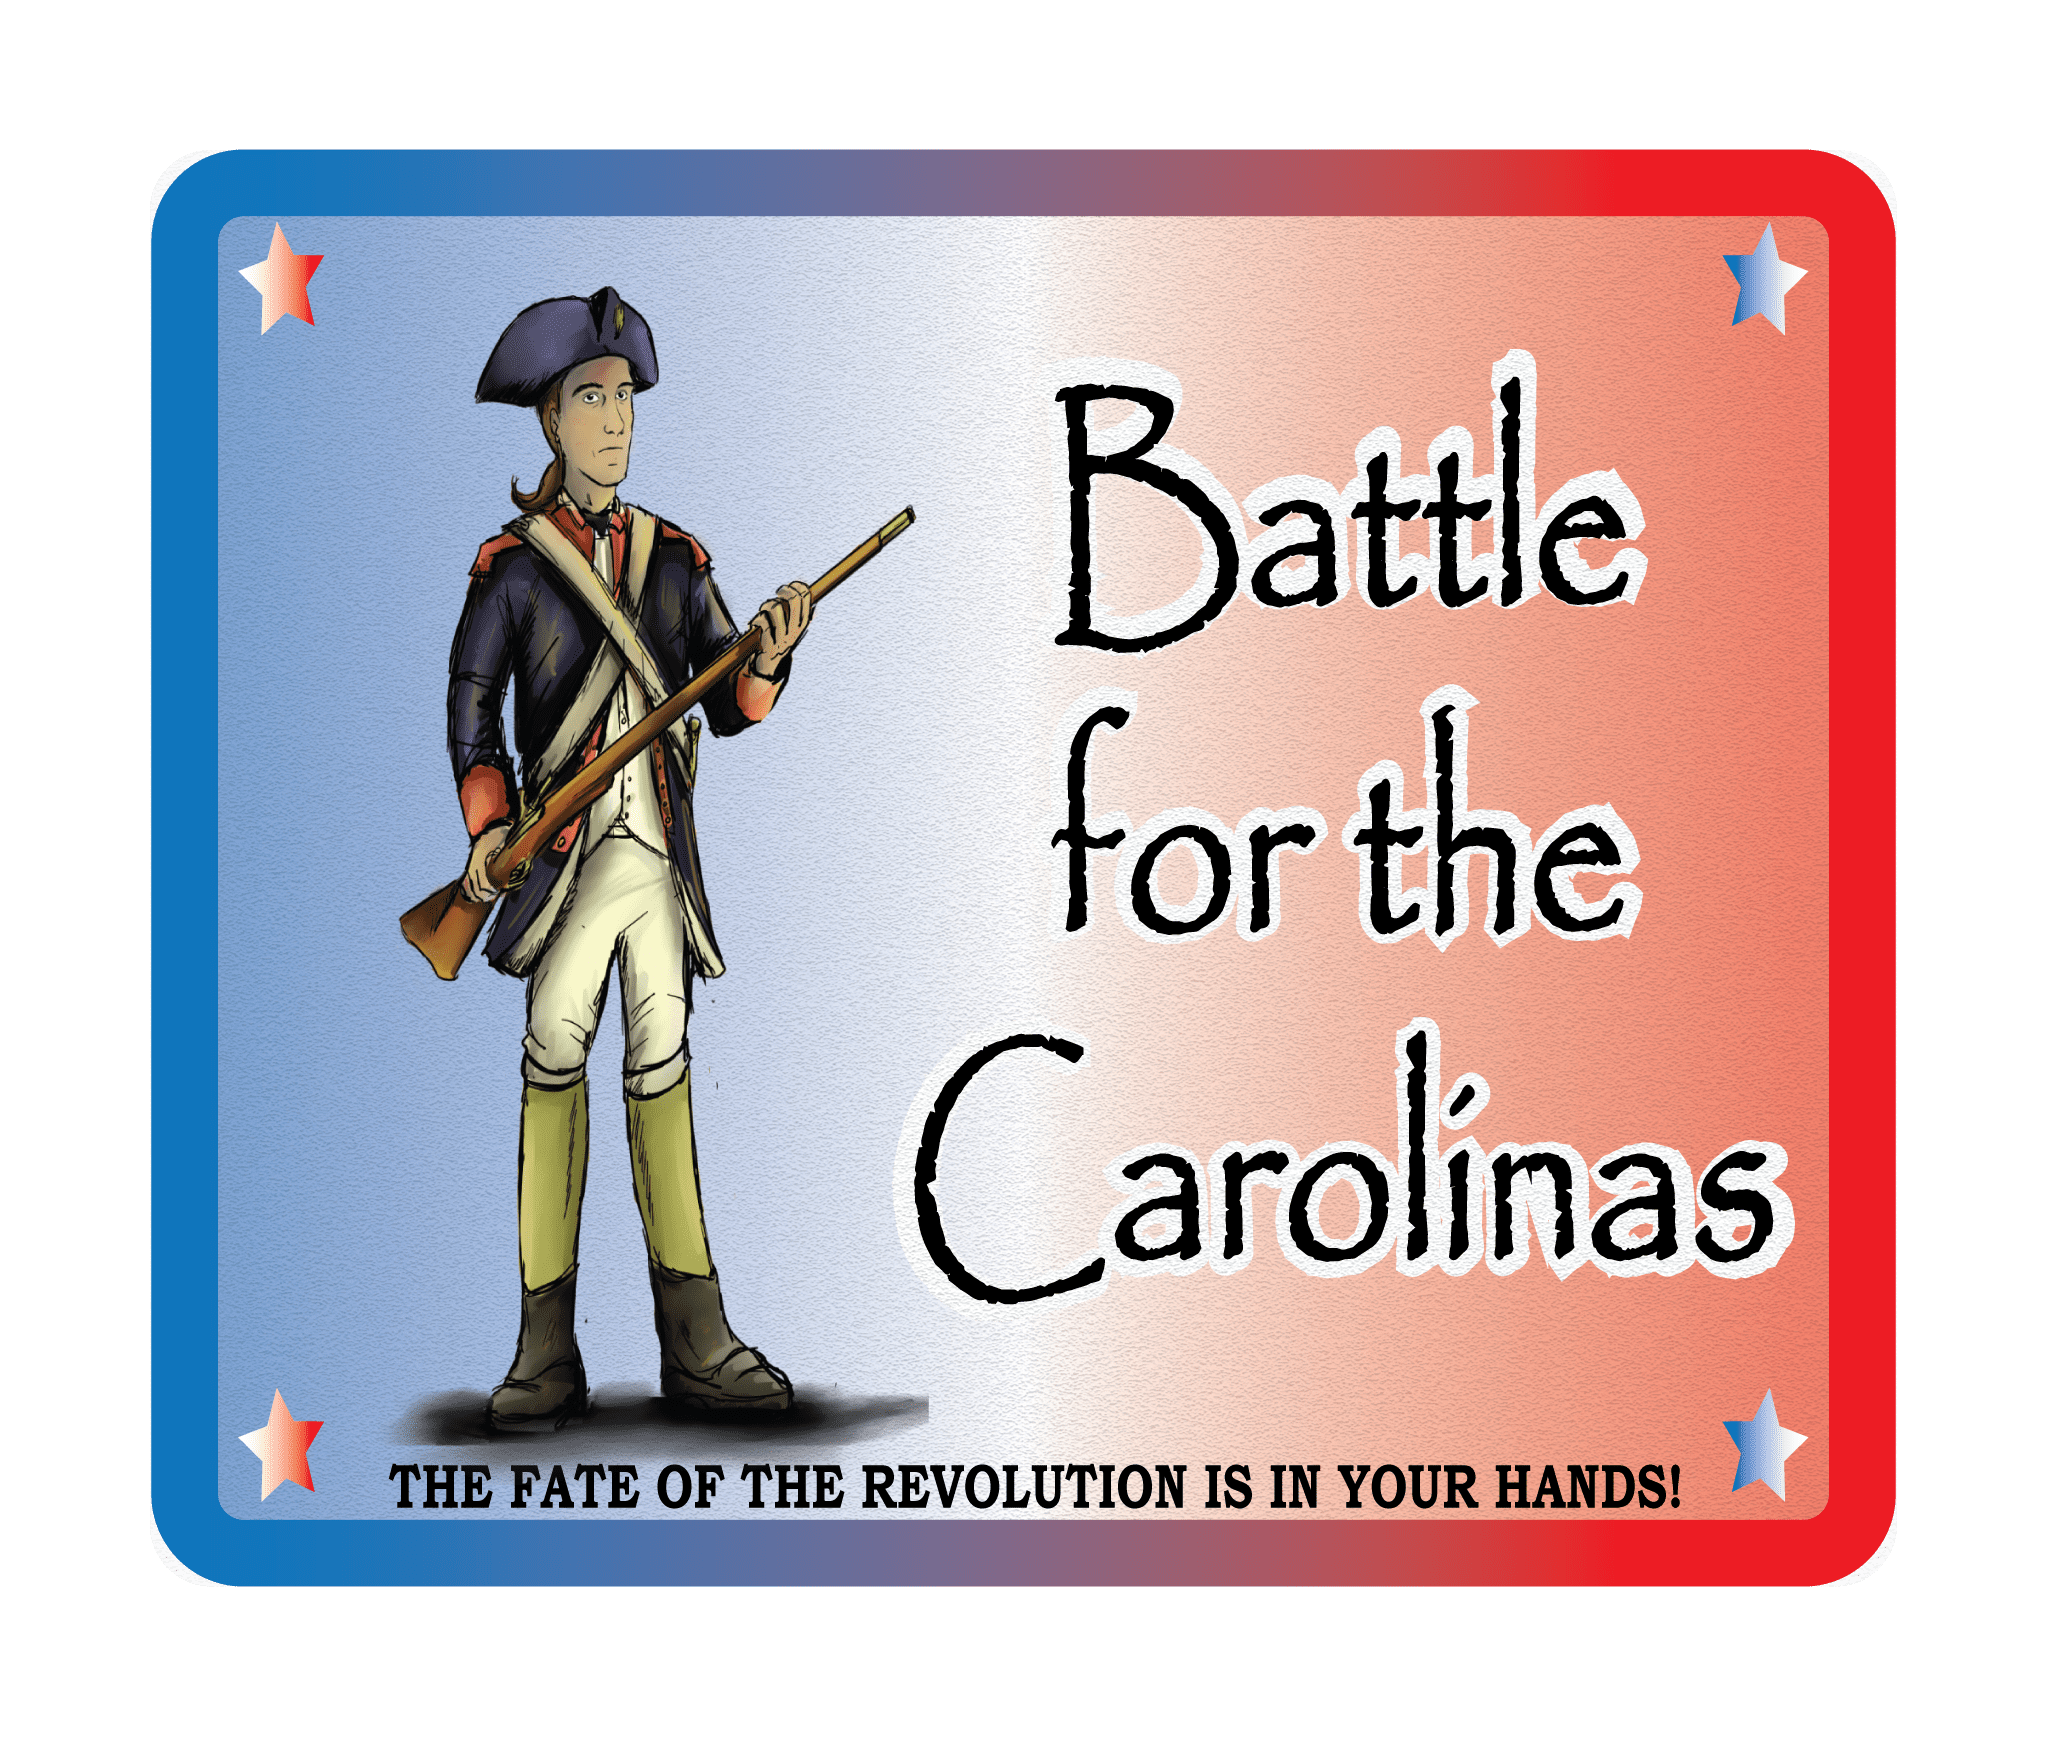 Battle for the Carolinas